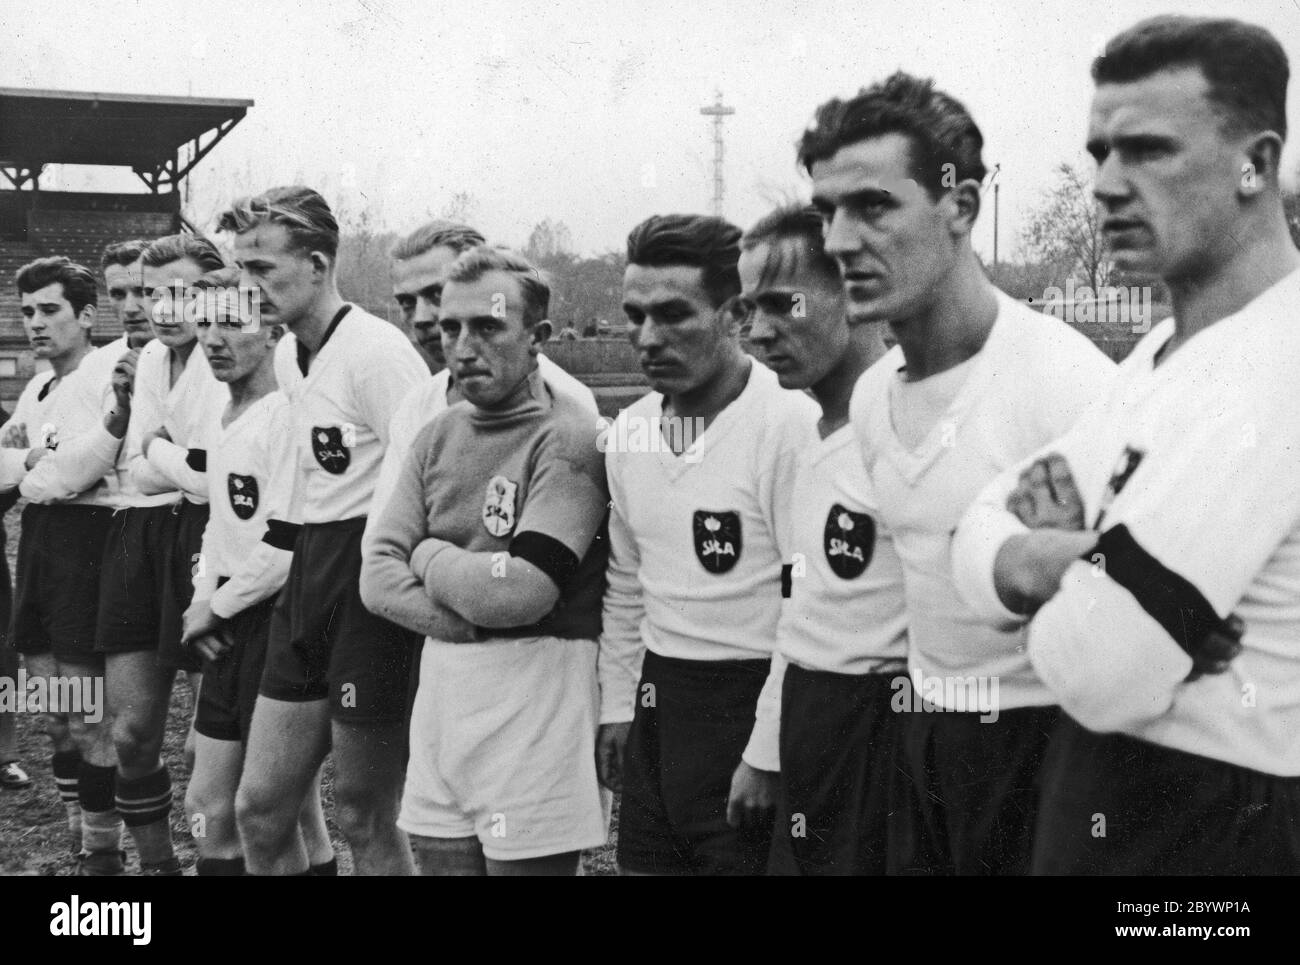 Futbolistas del Polaco Sport Club Siła Trzyniec durante el partido contra Chorzów en Katowice ca. 1938 Foto de stock